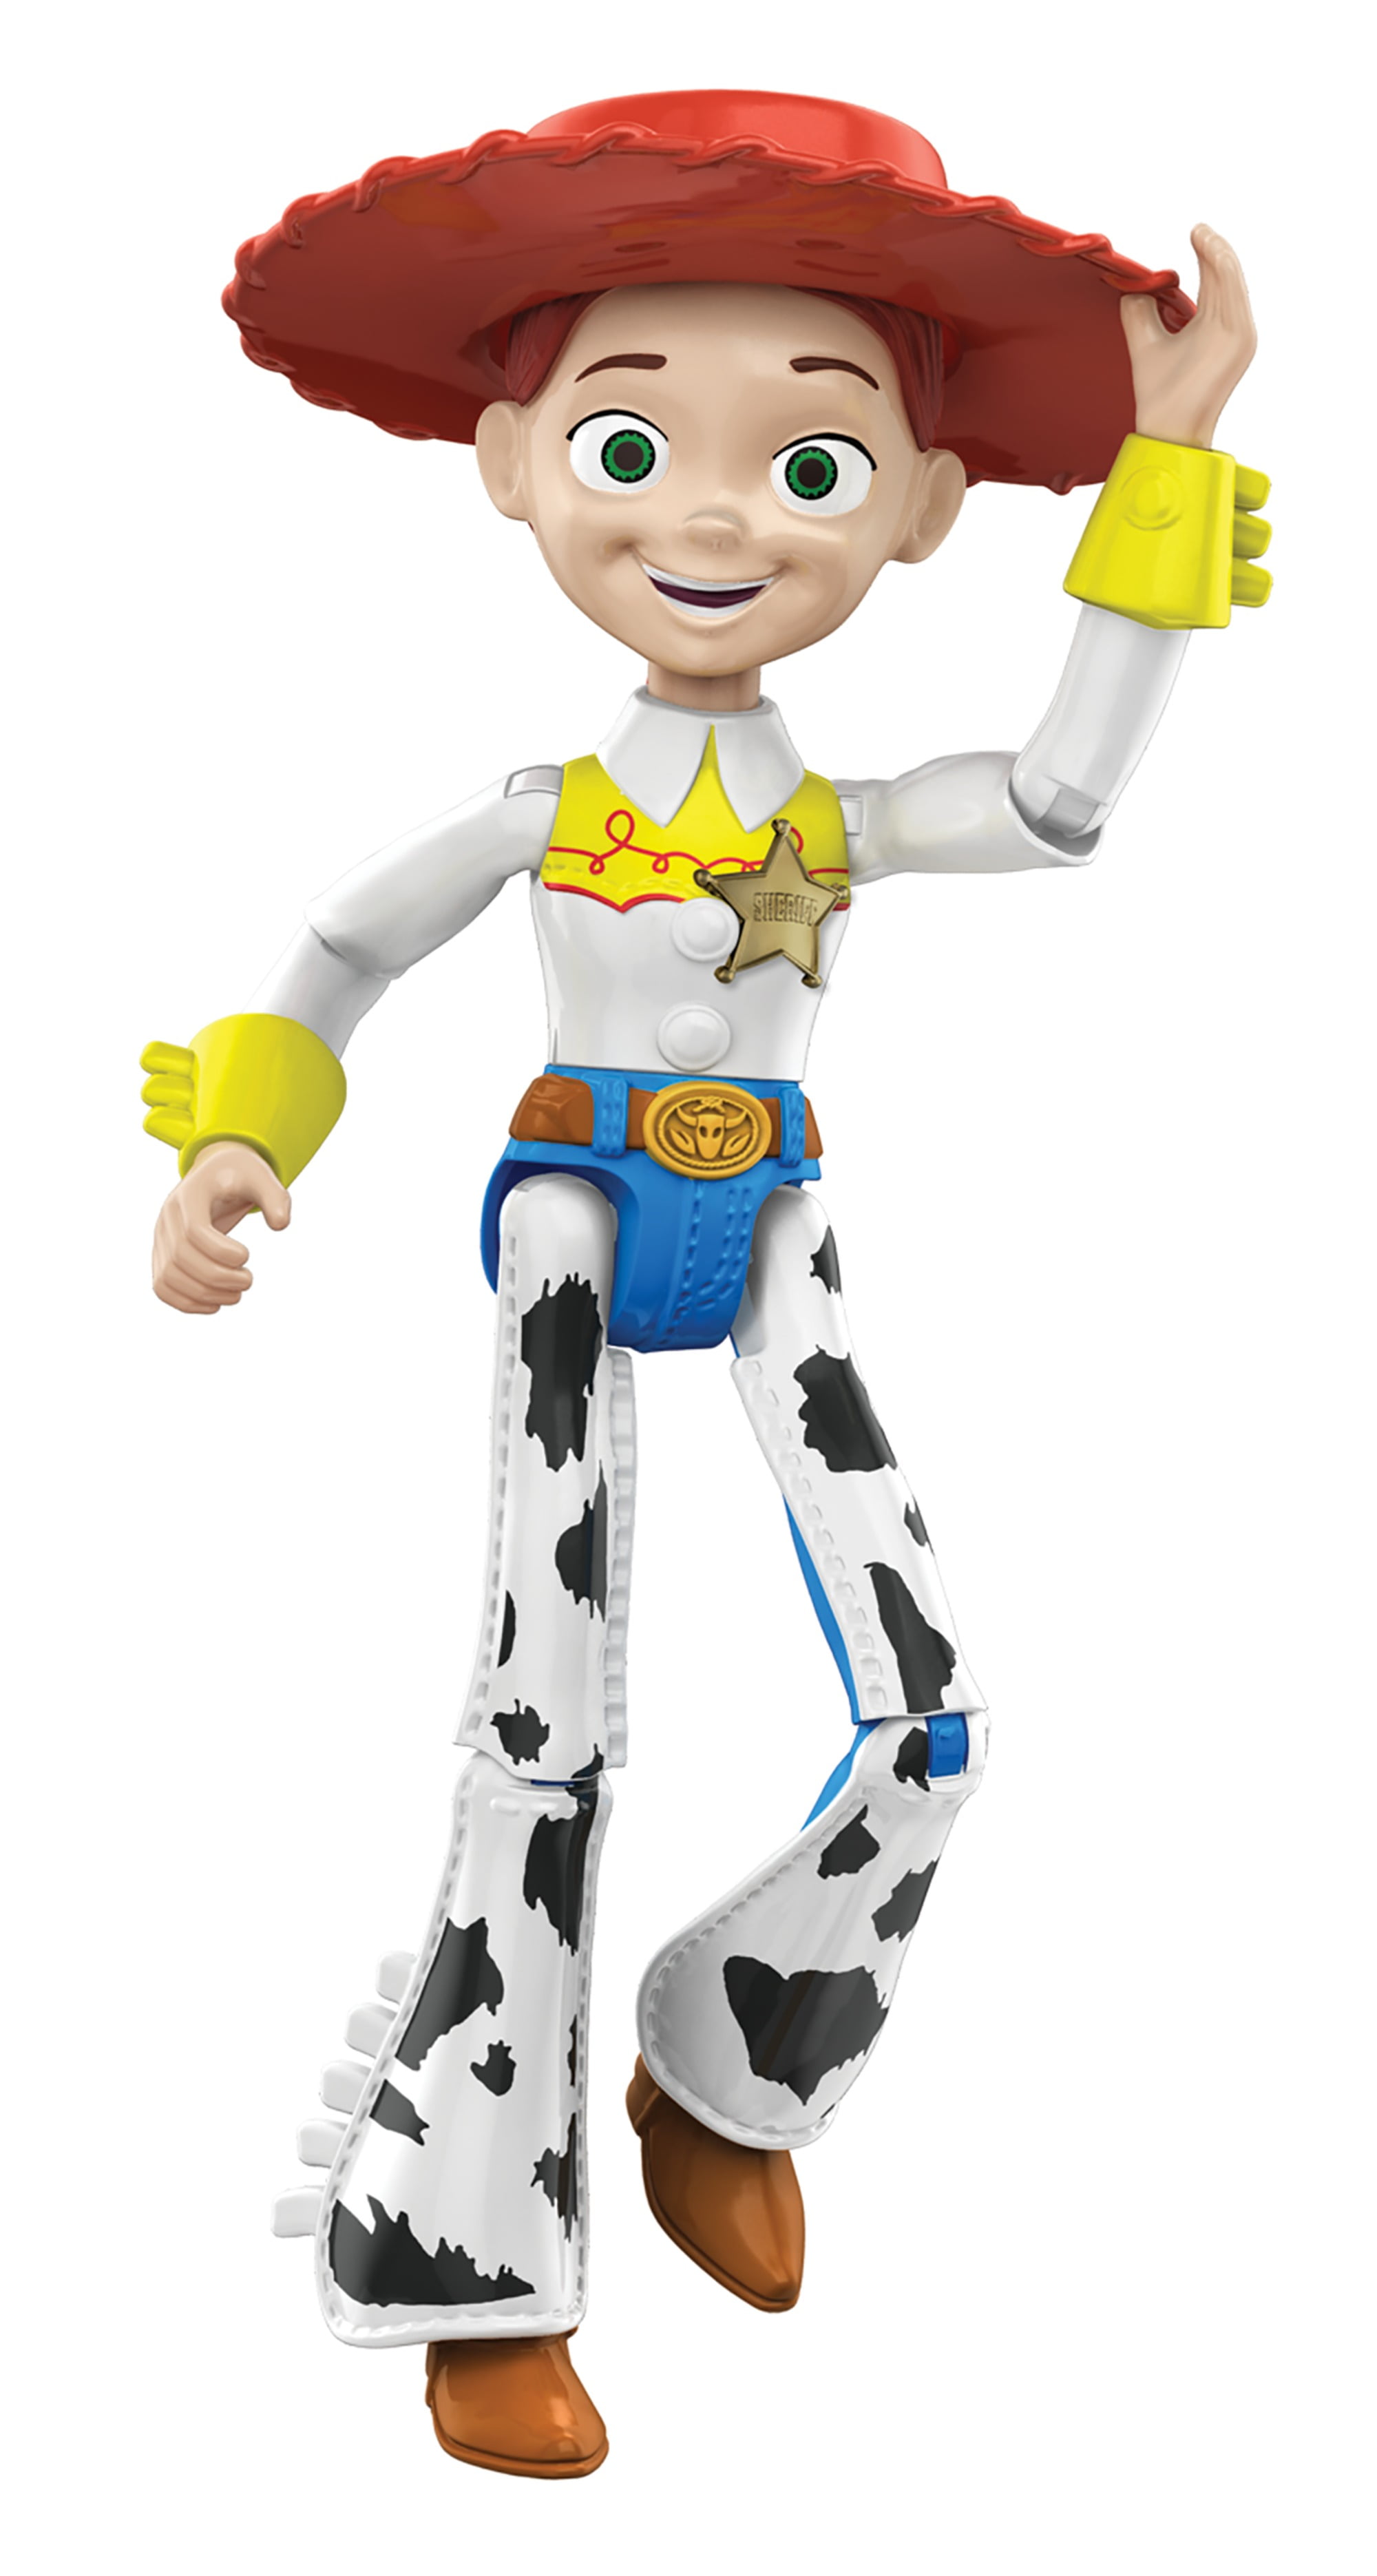 Disney Pixar Toy Story 4 Figure Jessie